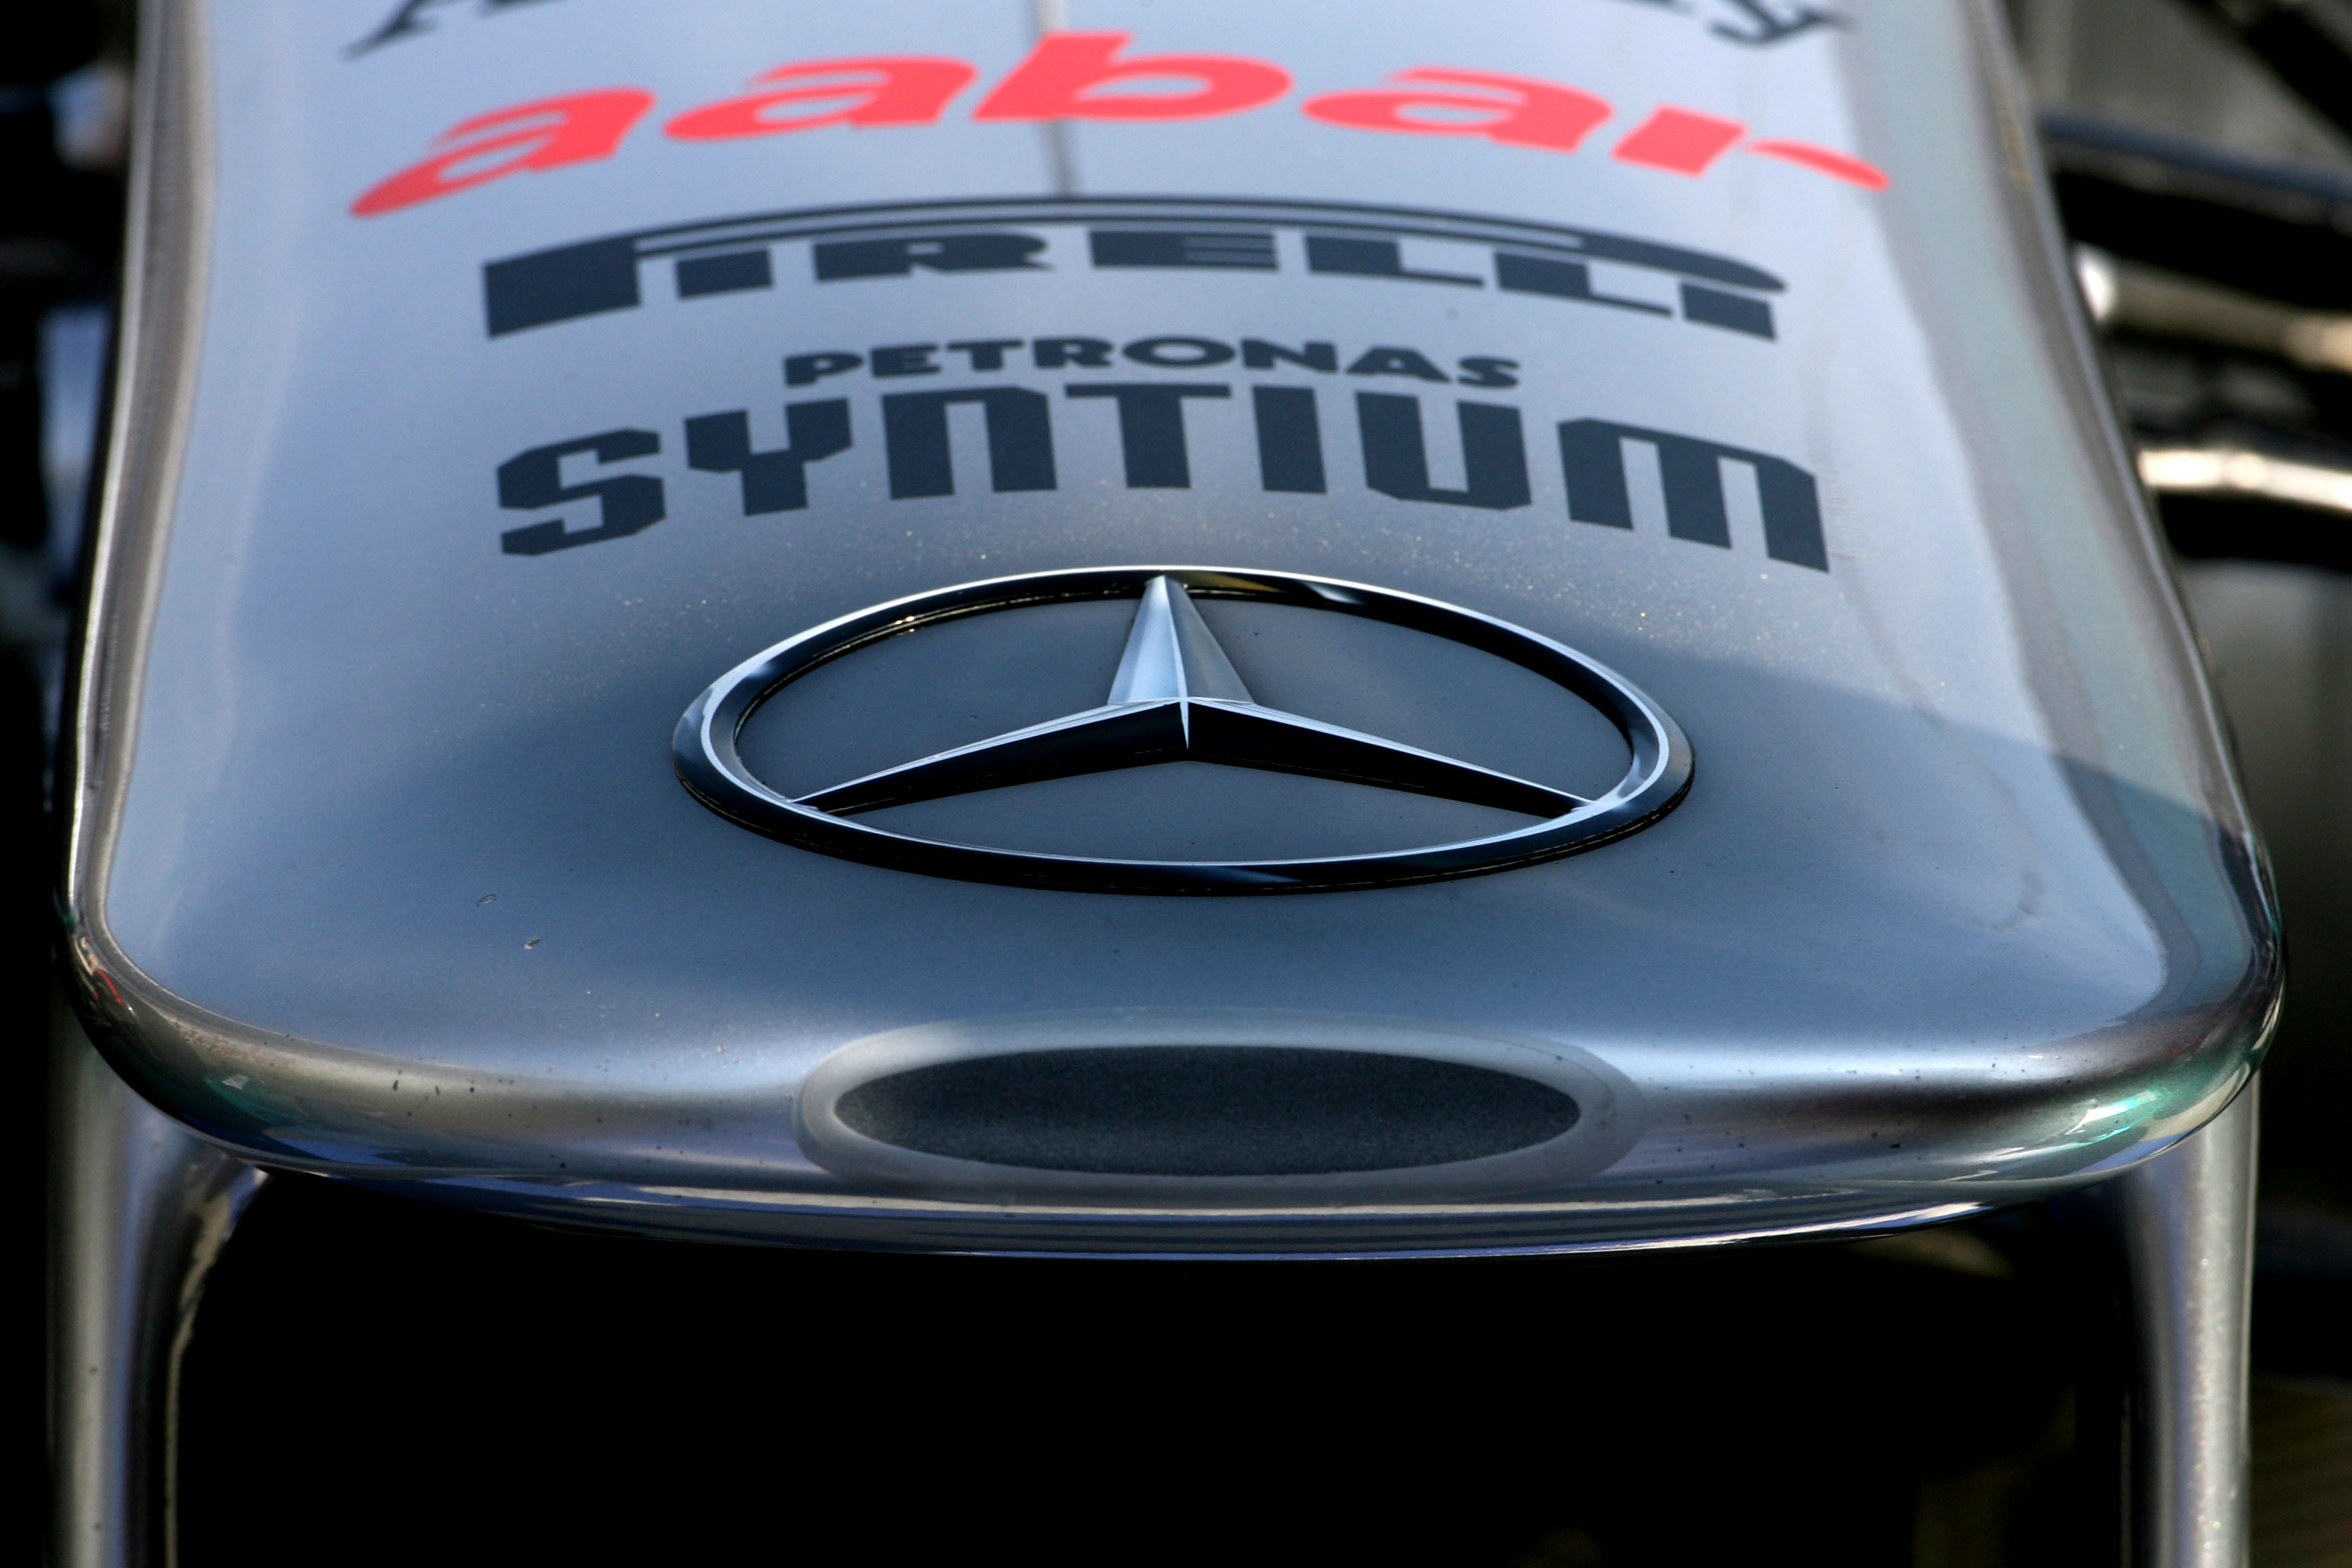 ‘Mercedes werkt aan ‘F-duct’ voor voorvleugel’